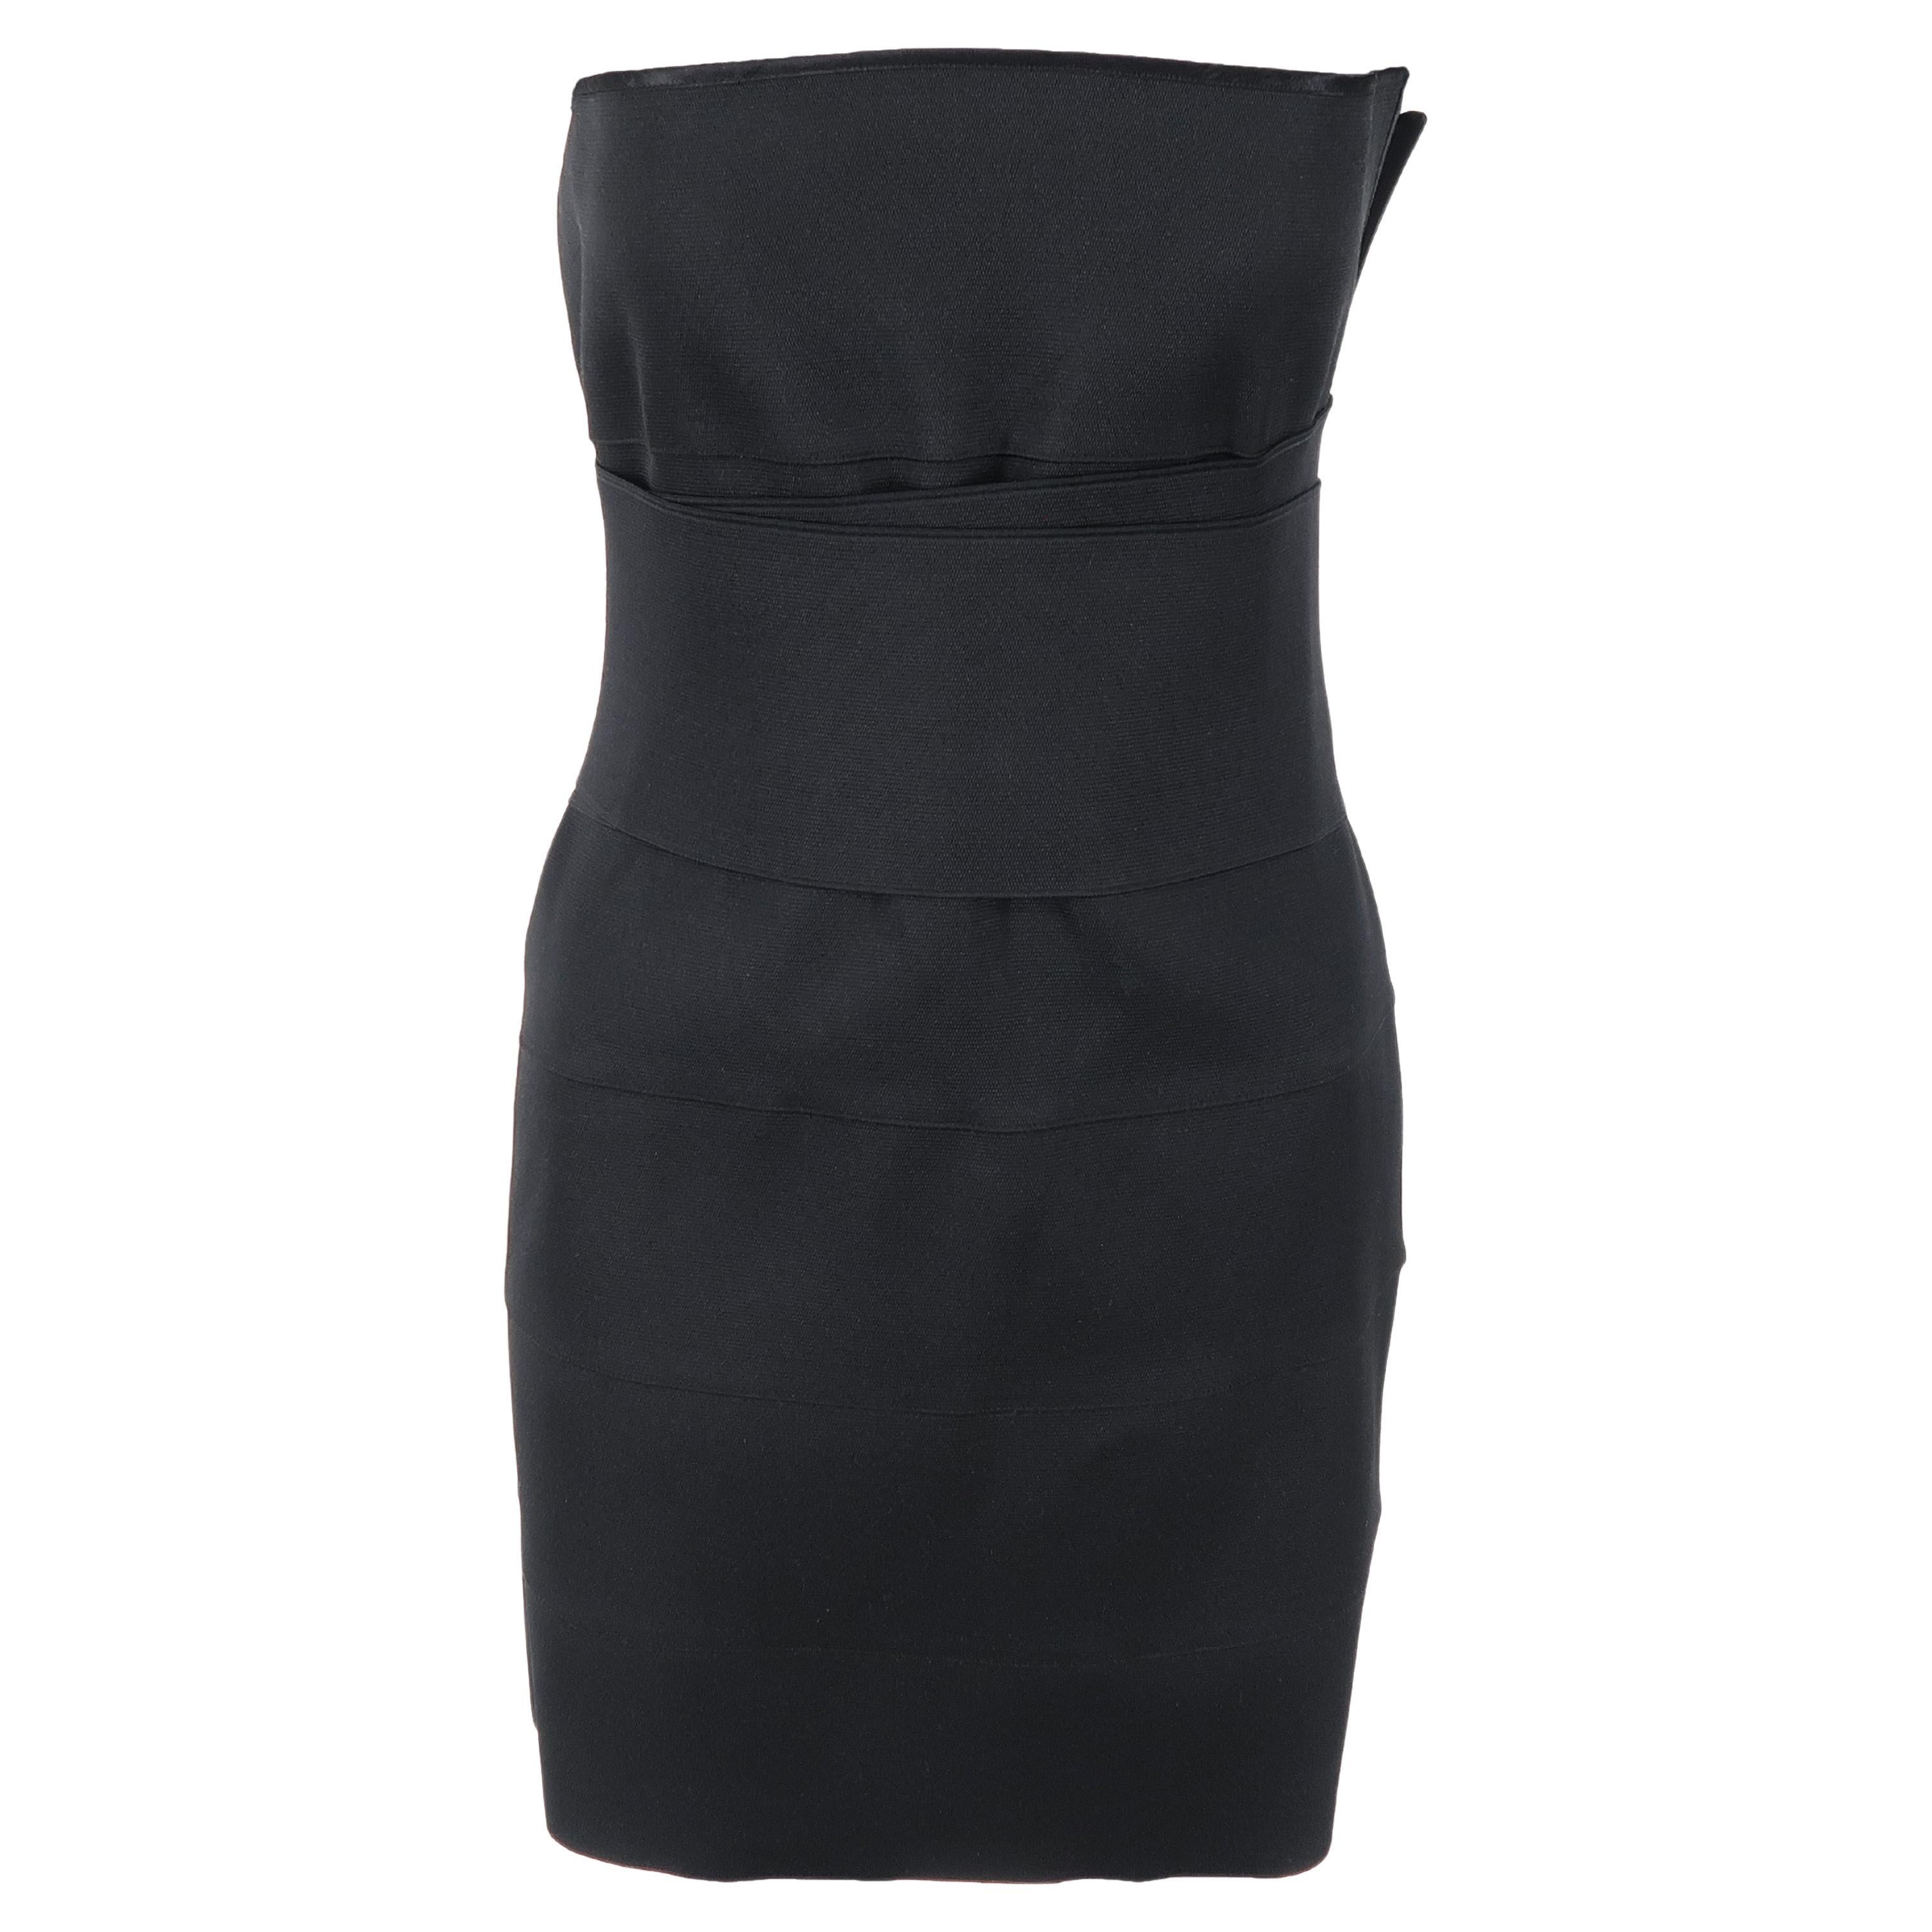 Un point fort de la collection YSL printemps/été 2001. Cette mini-robe noire extensible en bandage, avec sa ceinture enveloppante qui sculpte la taille, est le meilleur de Tom Ford : des vêtements extrêmement féminins, confiants, sexy et autonomes